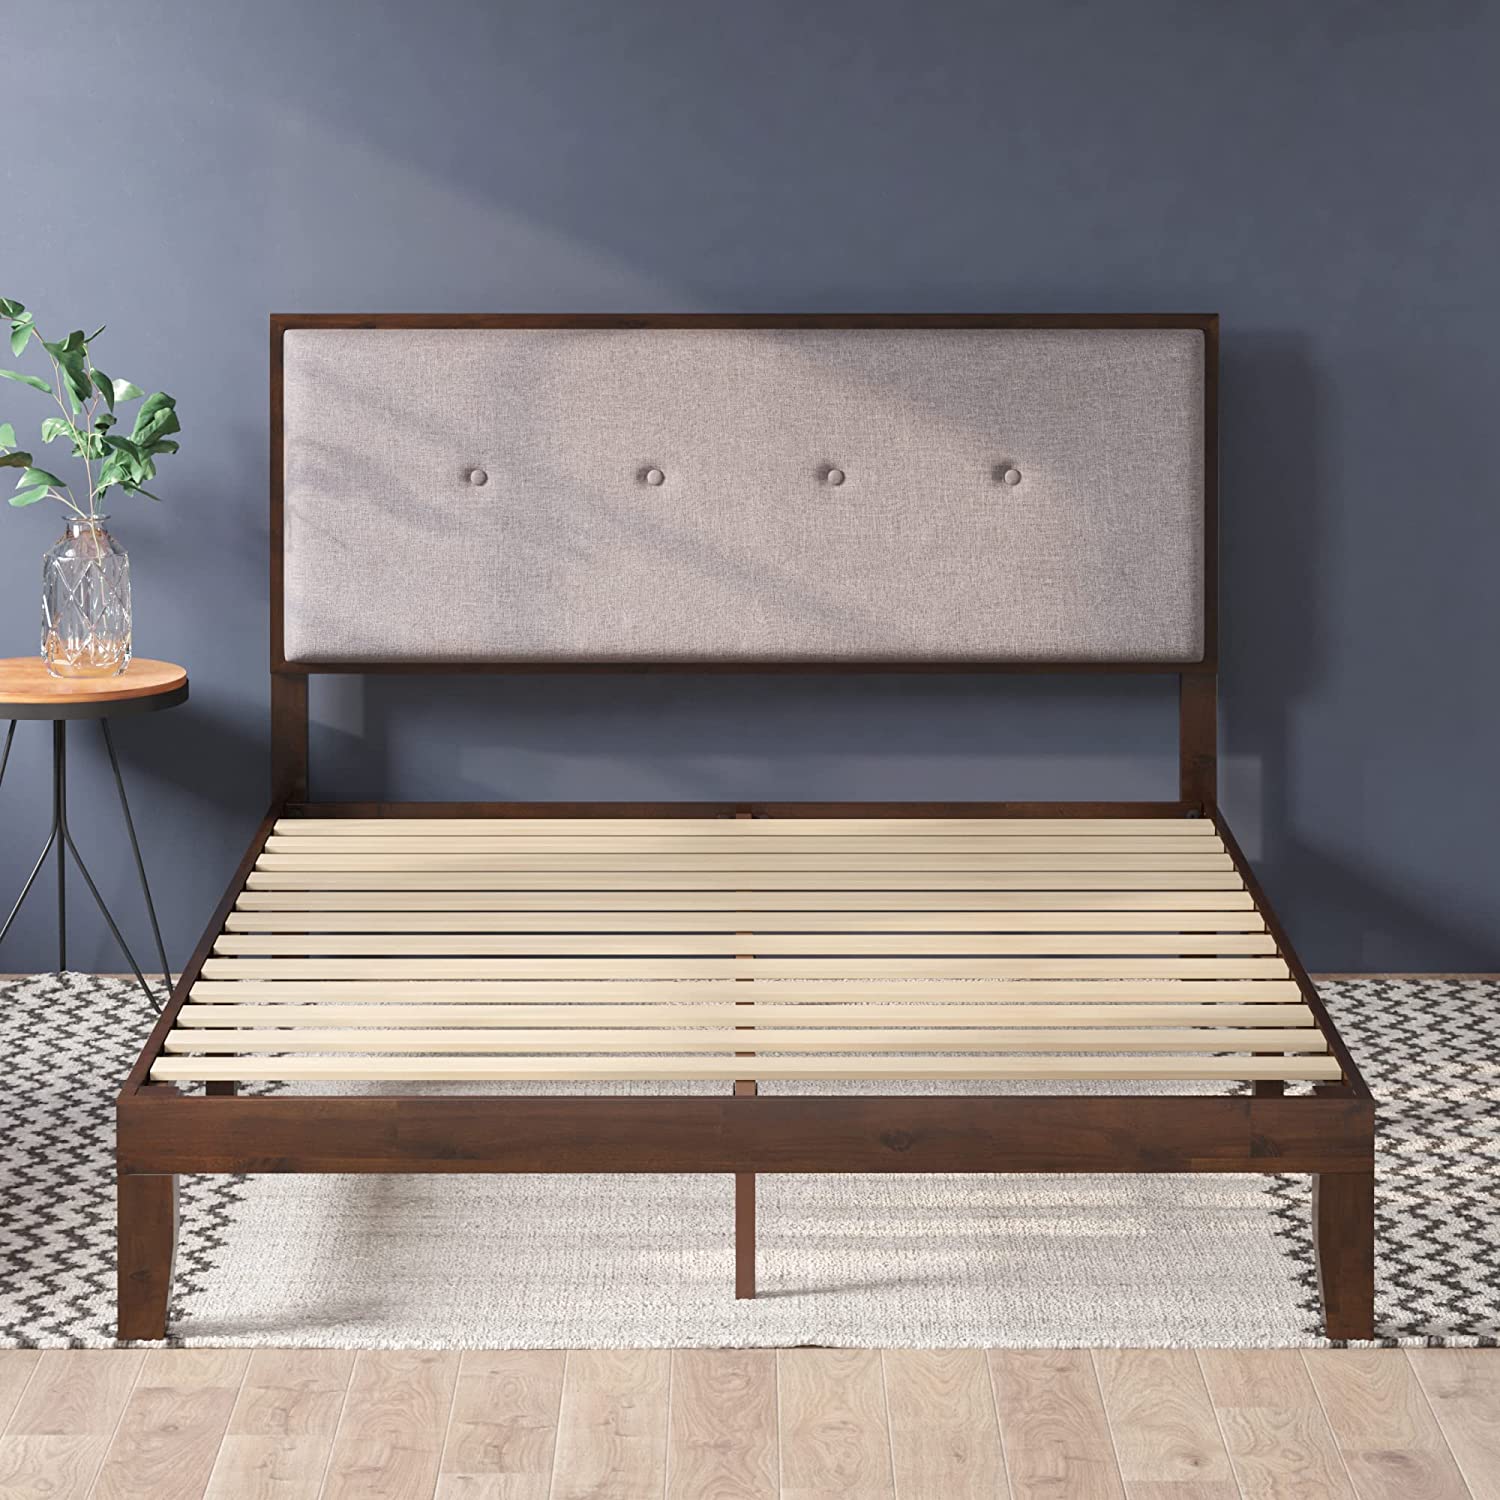 ZINUS Moiz Wood Platform Bed Frame with Adjustable Upholstered Headboard, Antique Espresso